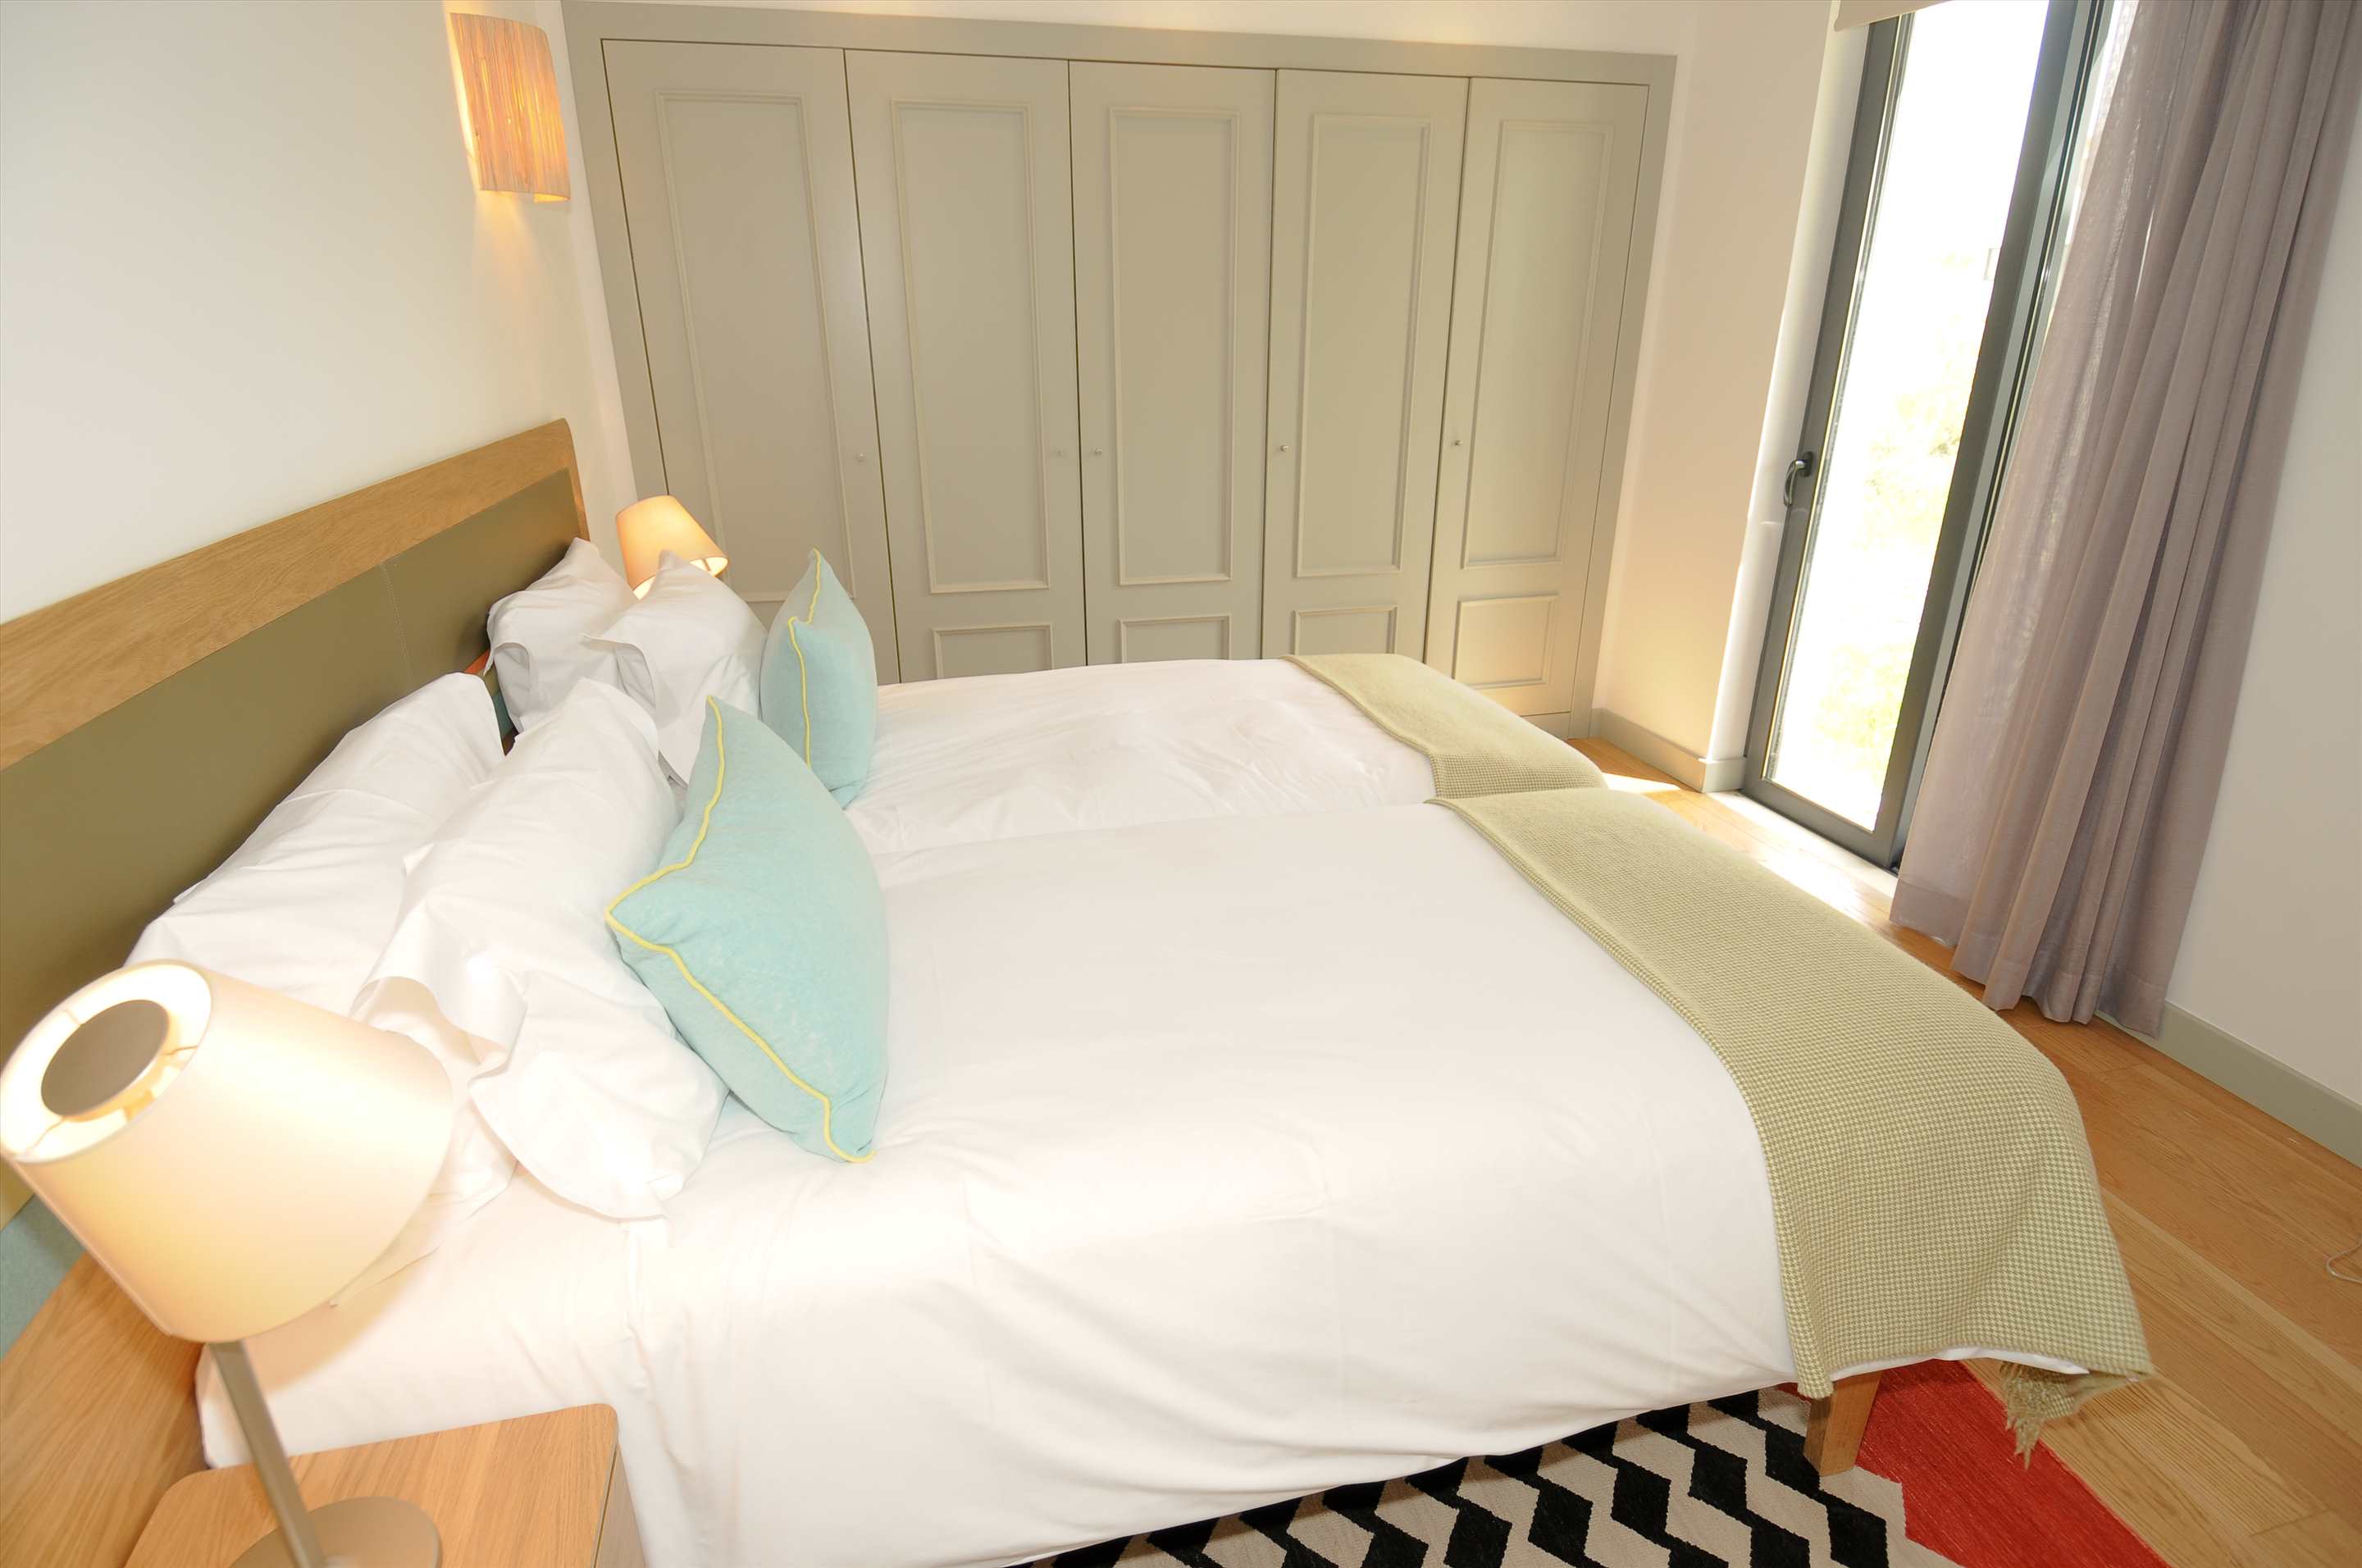 Martinhal Village Garden House, One Bedroom plus Bunk Bed, 1 bedroom villa in Martinhal Sagres, Algarve Photo #7